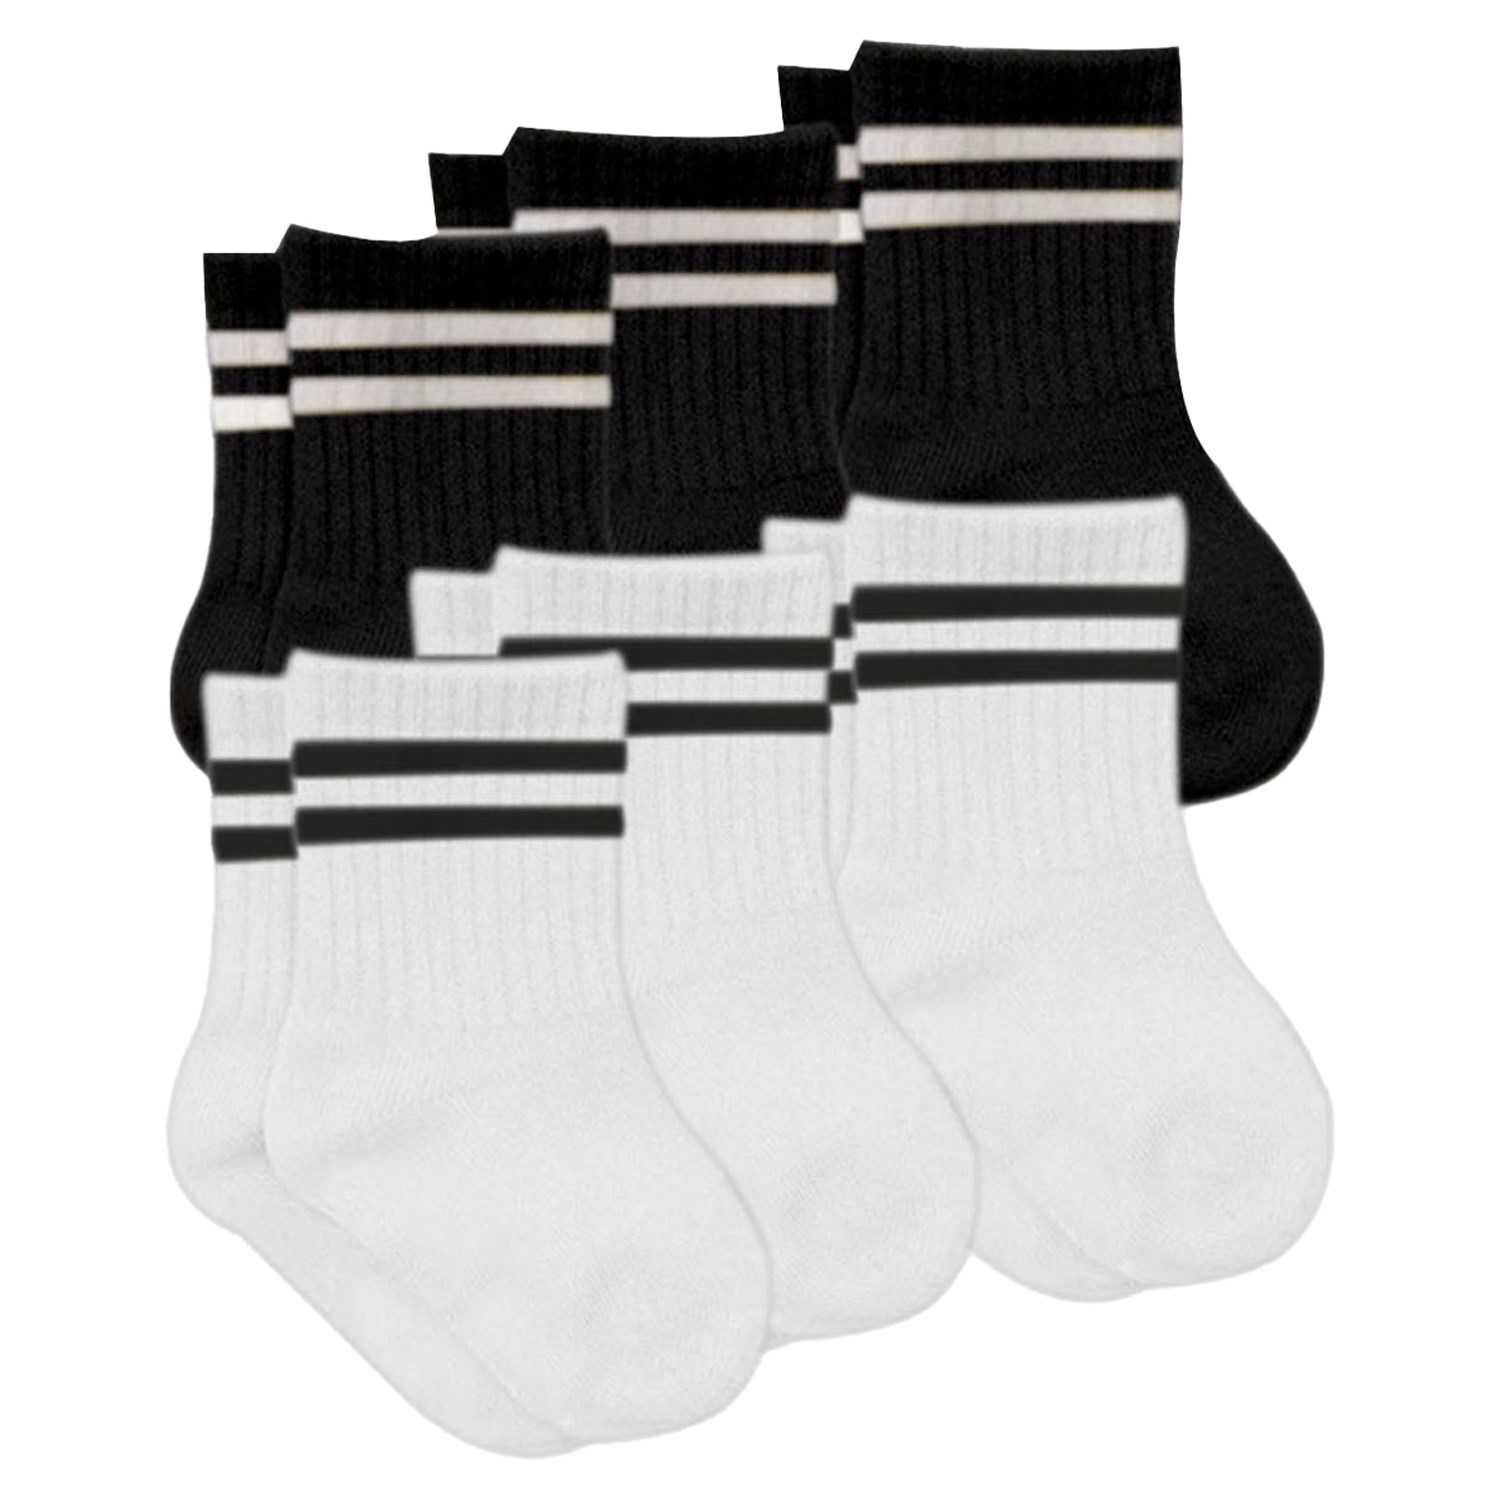 Bistyle 6'lı Bebek Çorabı (Çemberli) 6010 Siyah-Beyaz